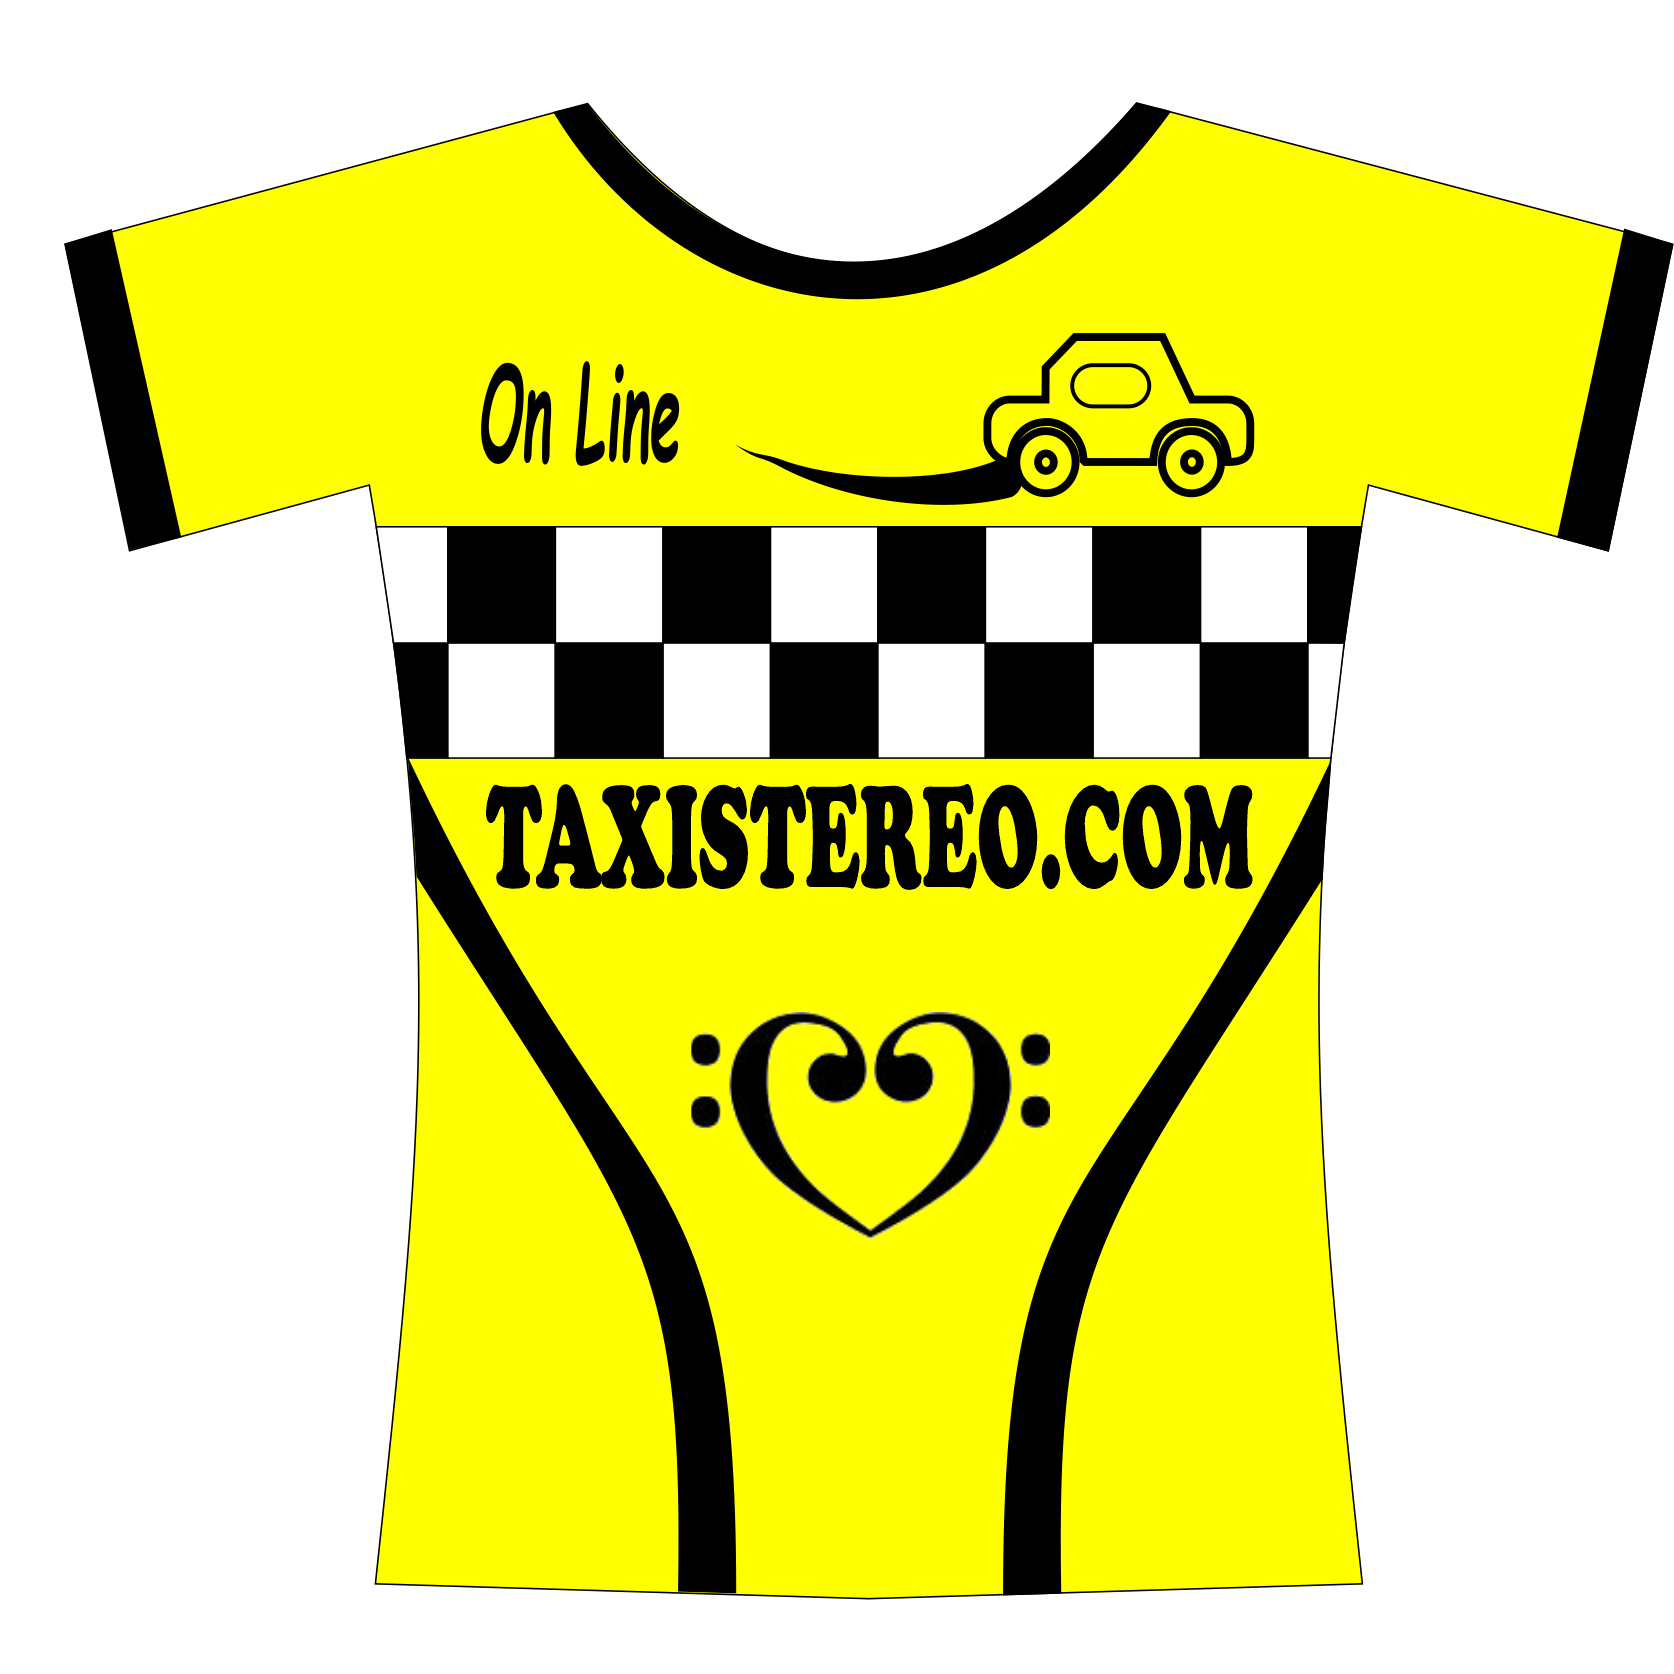 taxistereo.com